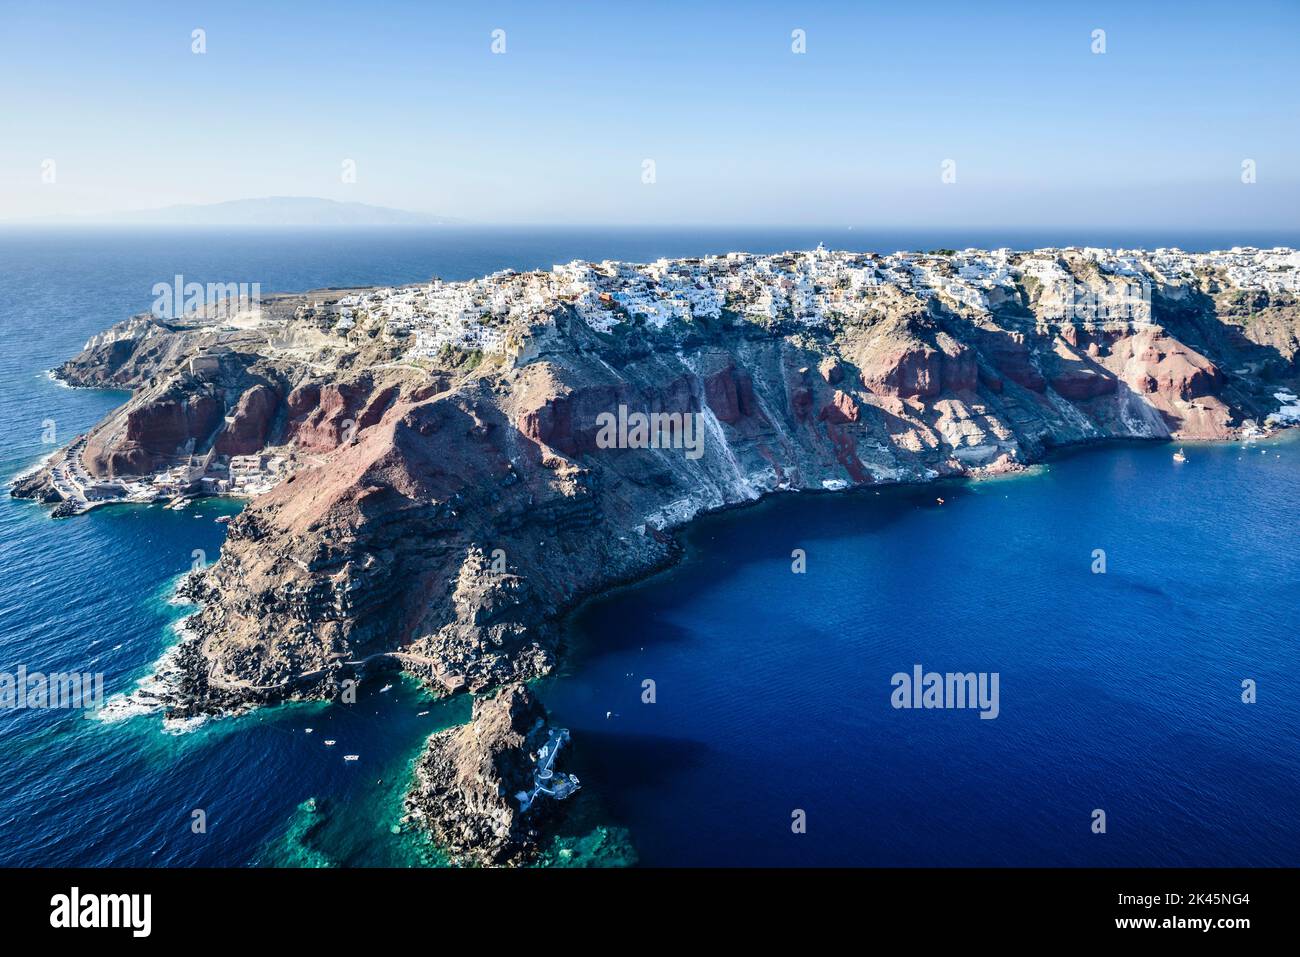 Vue aérienne d'une île dans les mers bleu profond de la mer Égée, formations rocheuses, maisons blanchies à la chaux perchées sur les falaises. Banque D'Images